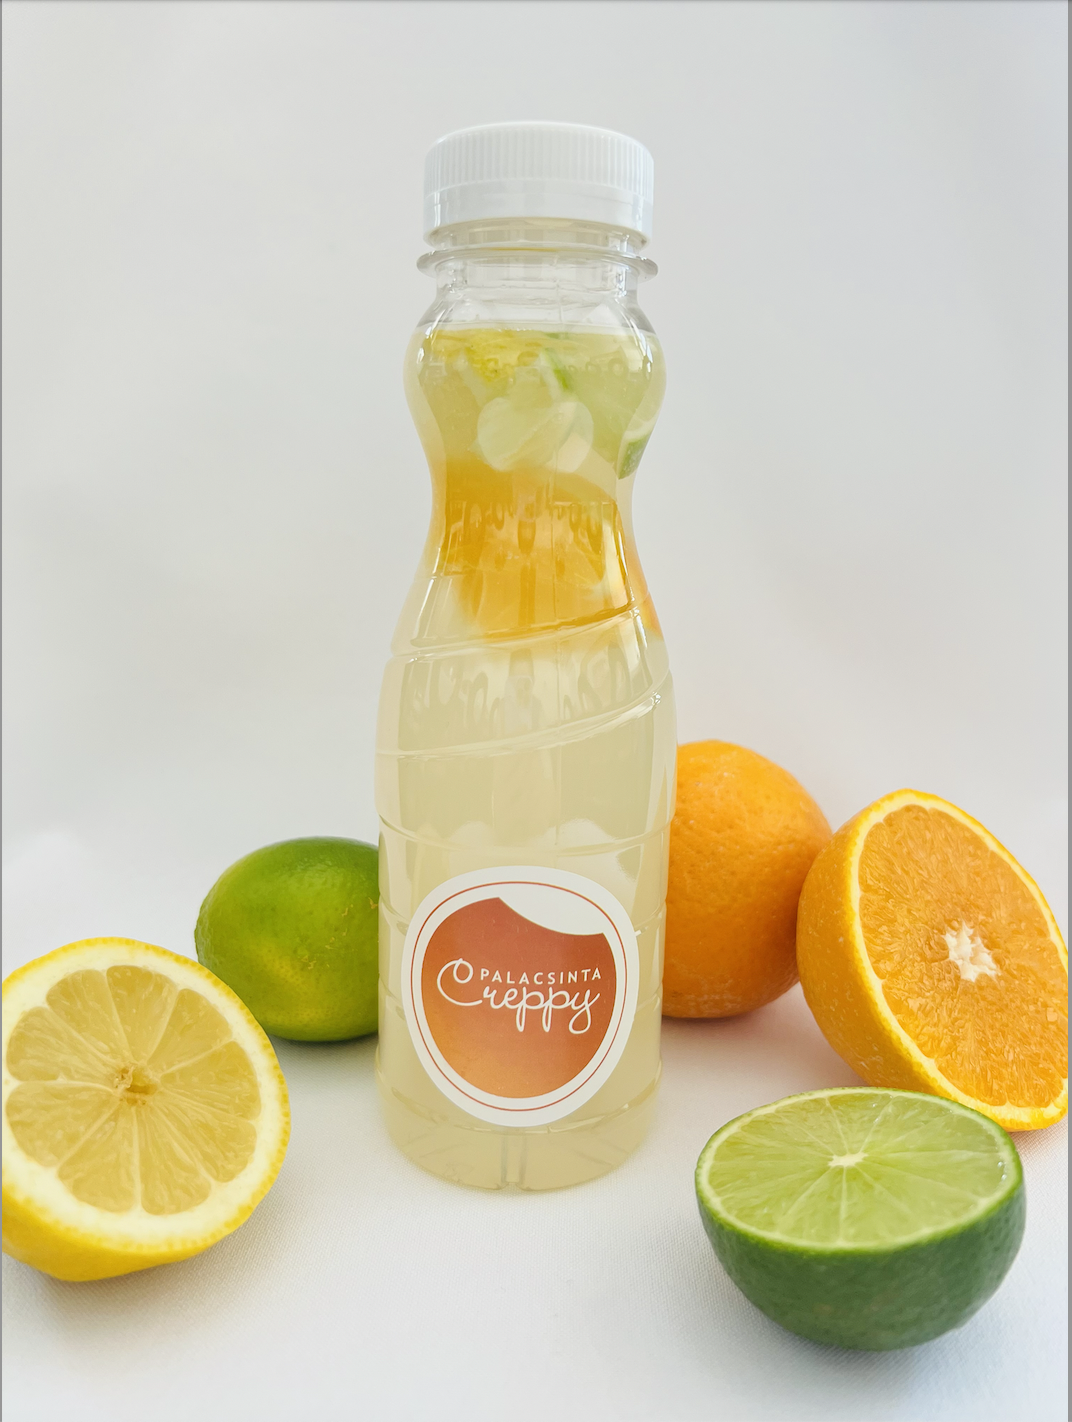 Creppy limonádé citrusos FL